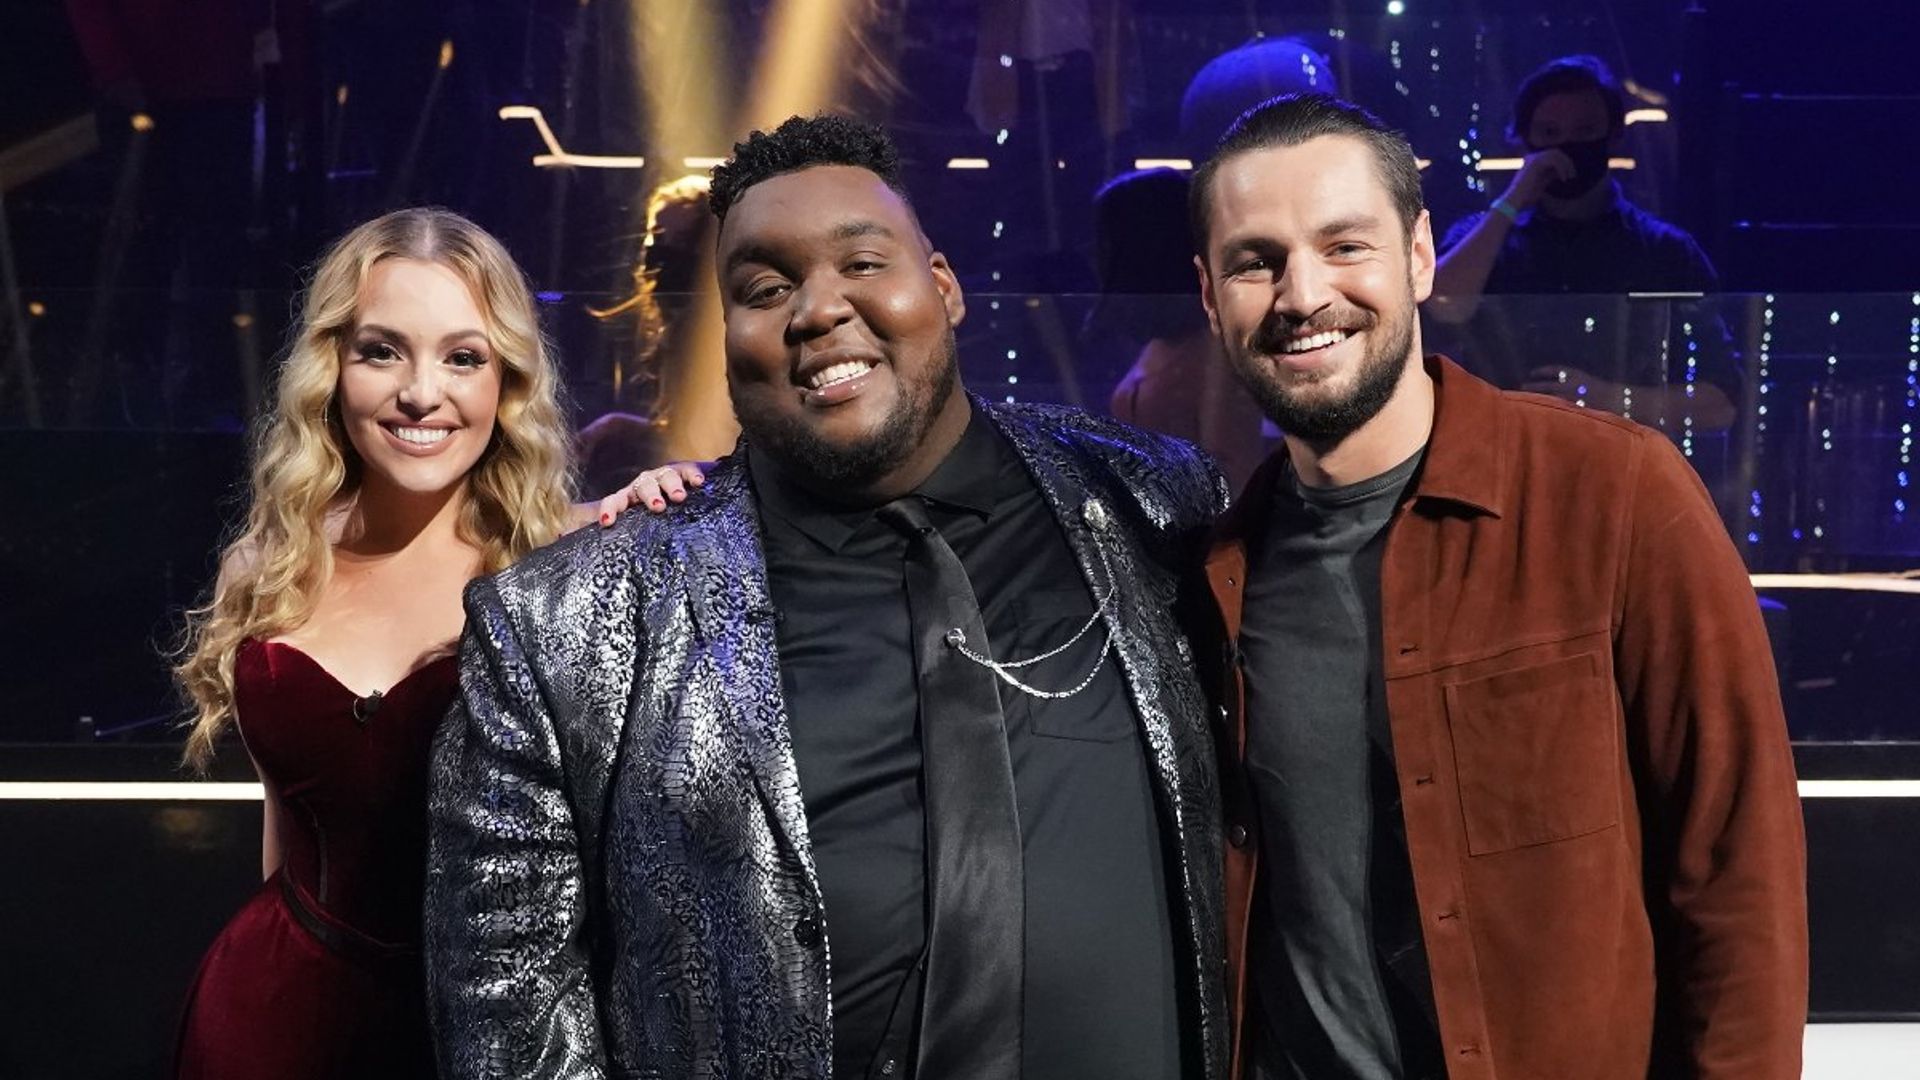 American Idol fans surprised as season 19 winner revealed